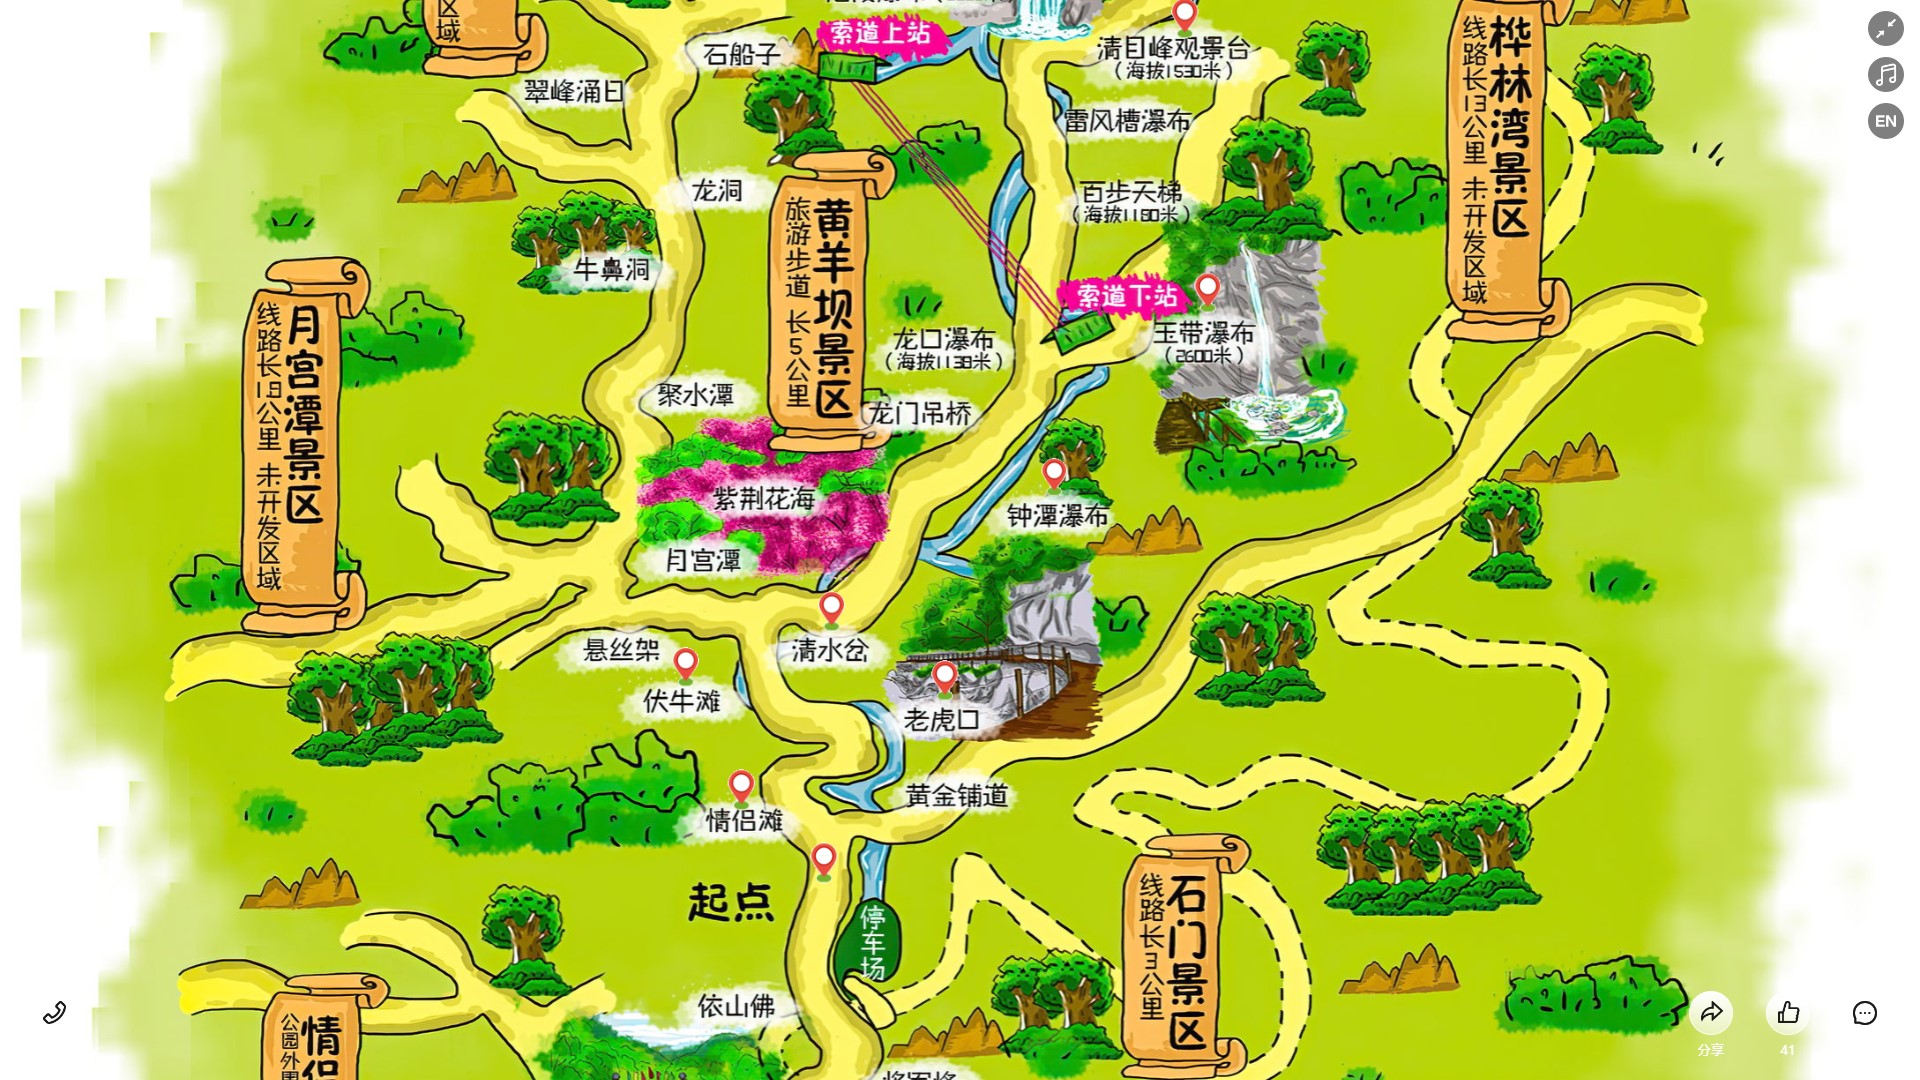 新竹镇景区导览系统